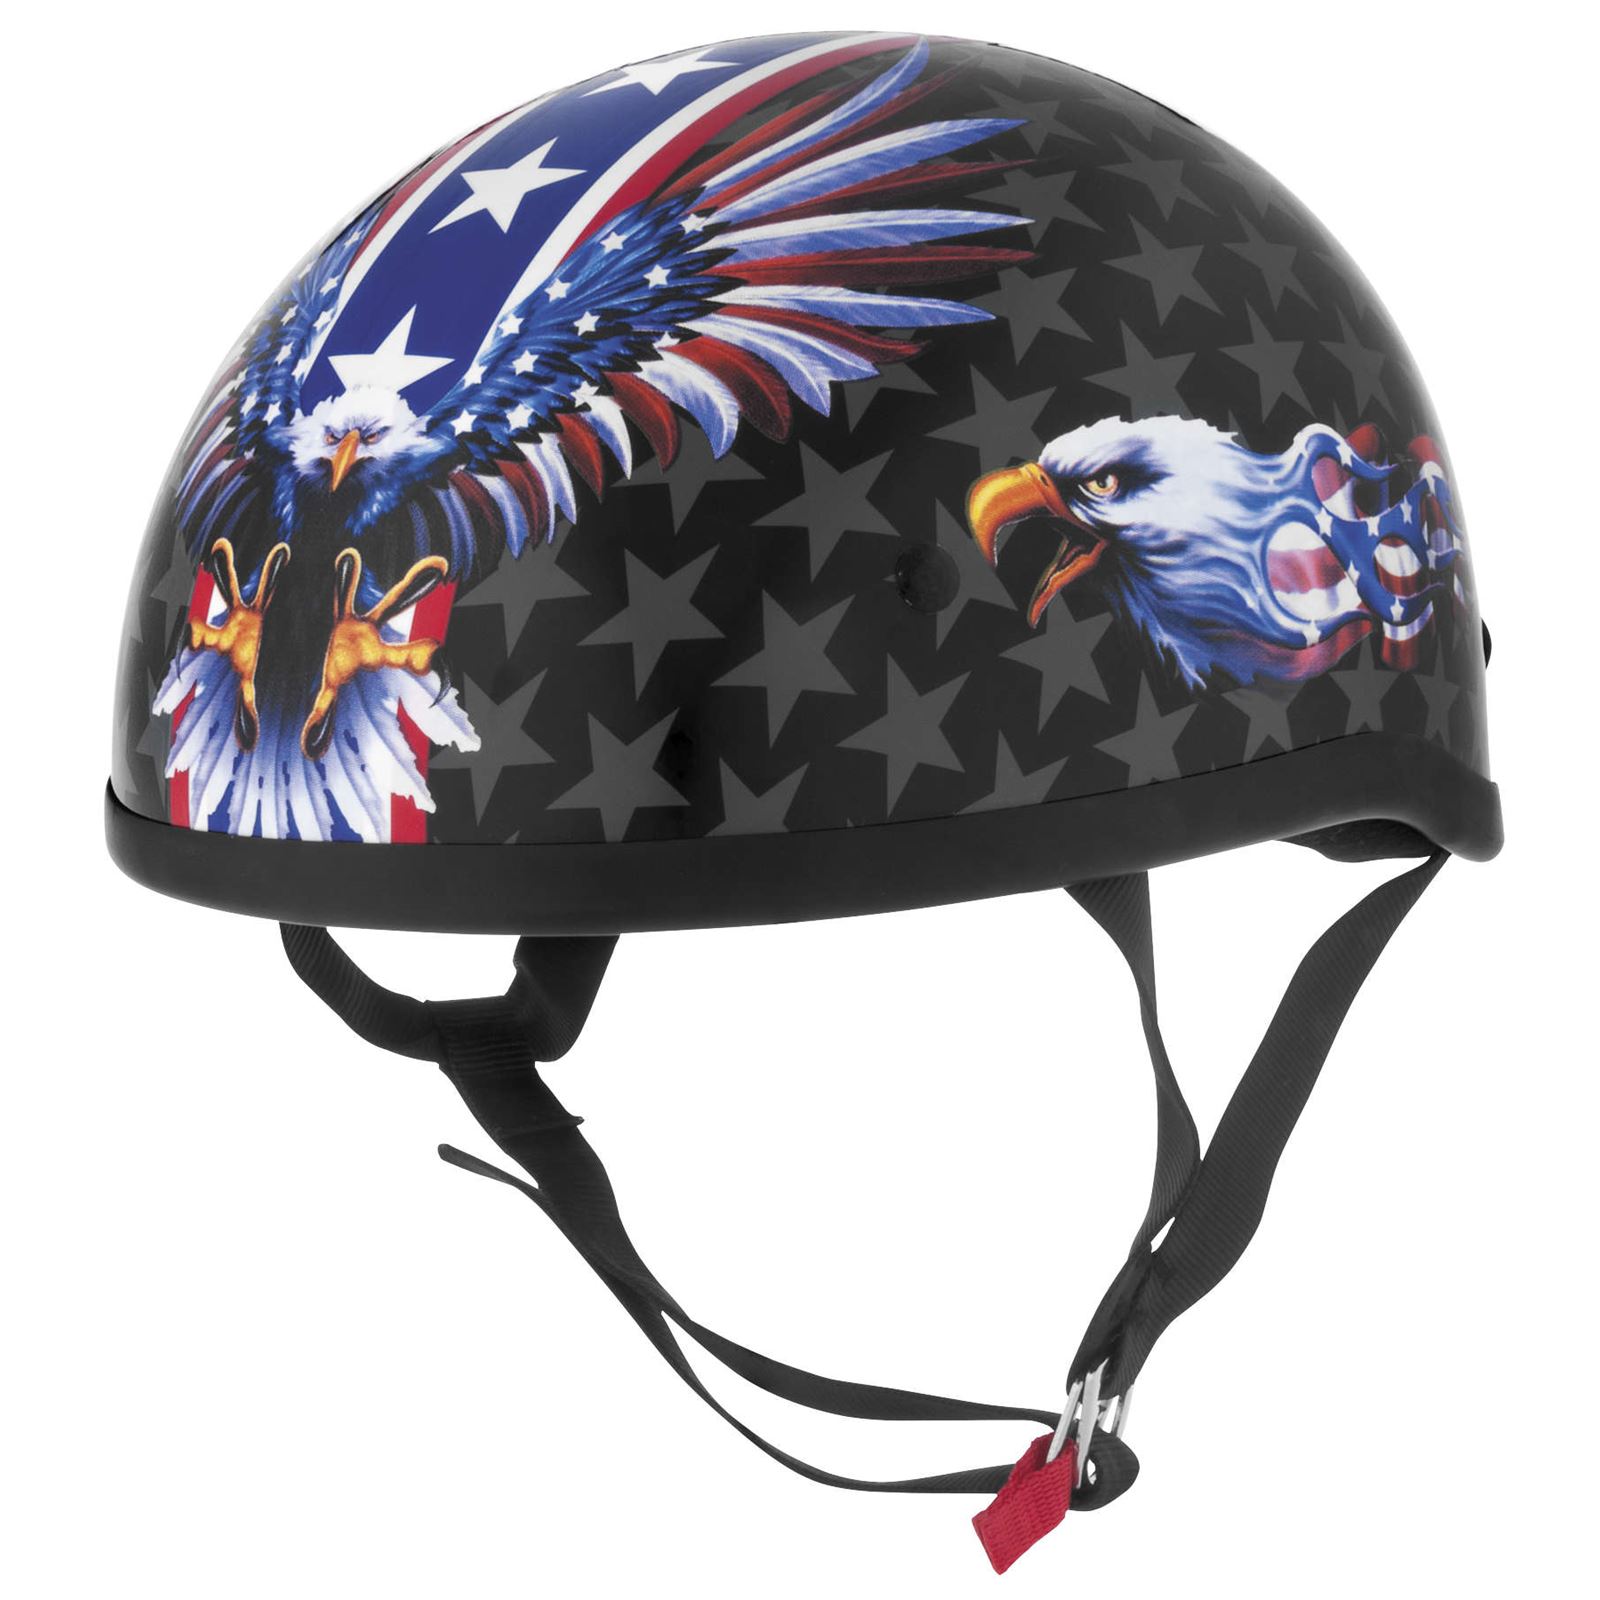 Skid Lid Helmets Original Lethal Threat US Flame Eagle Helmet - Black/Blue - Small